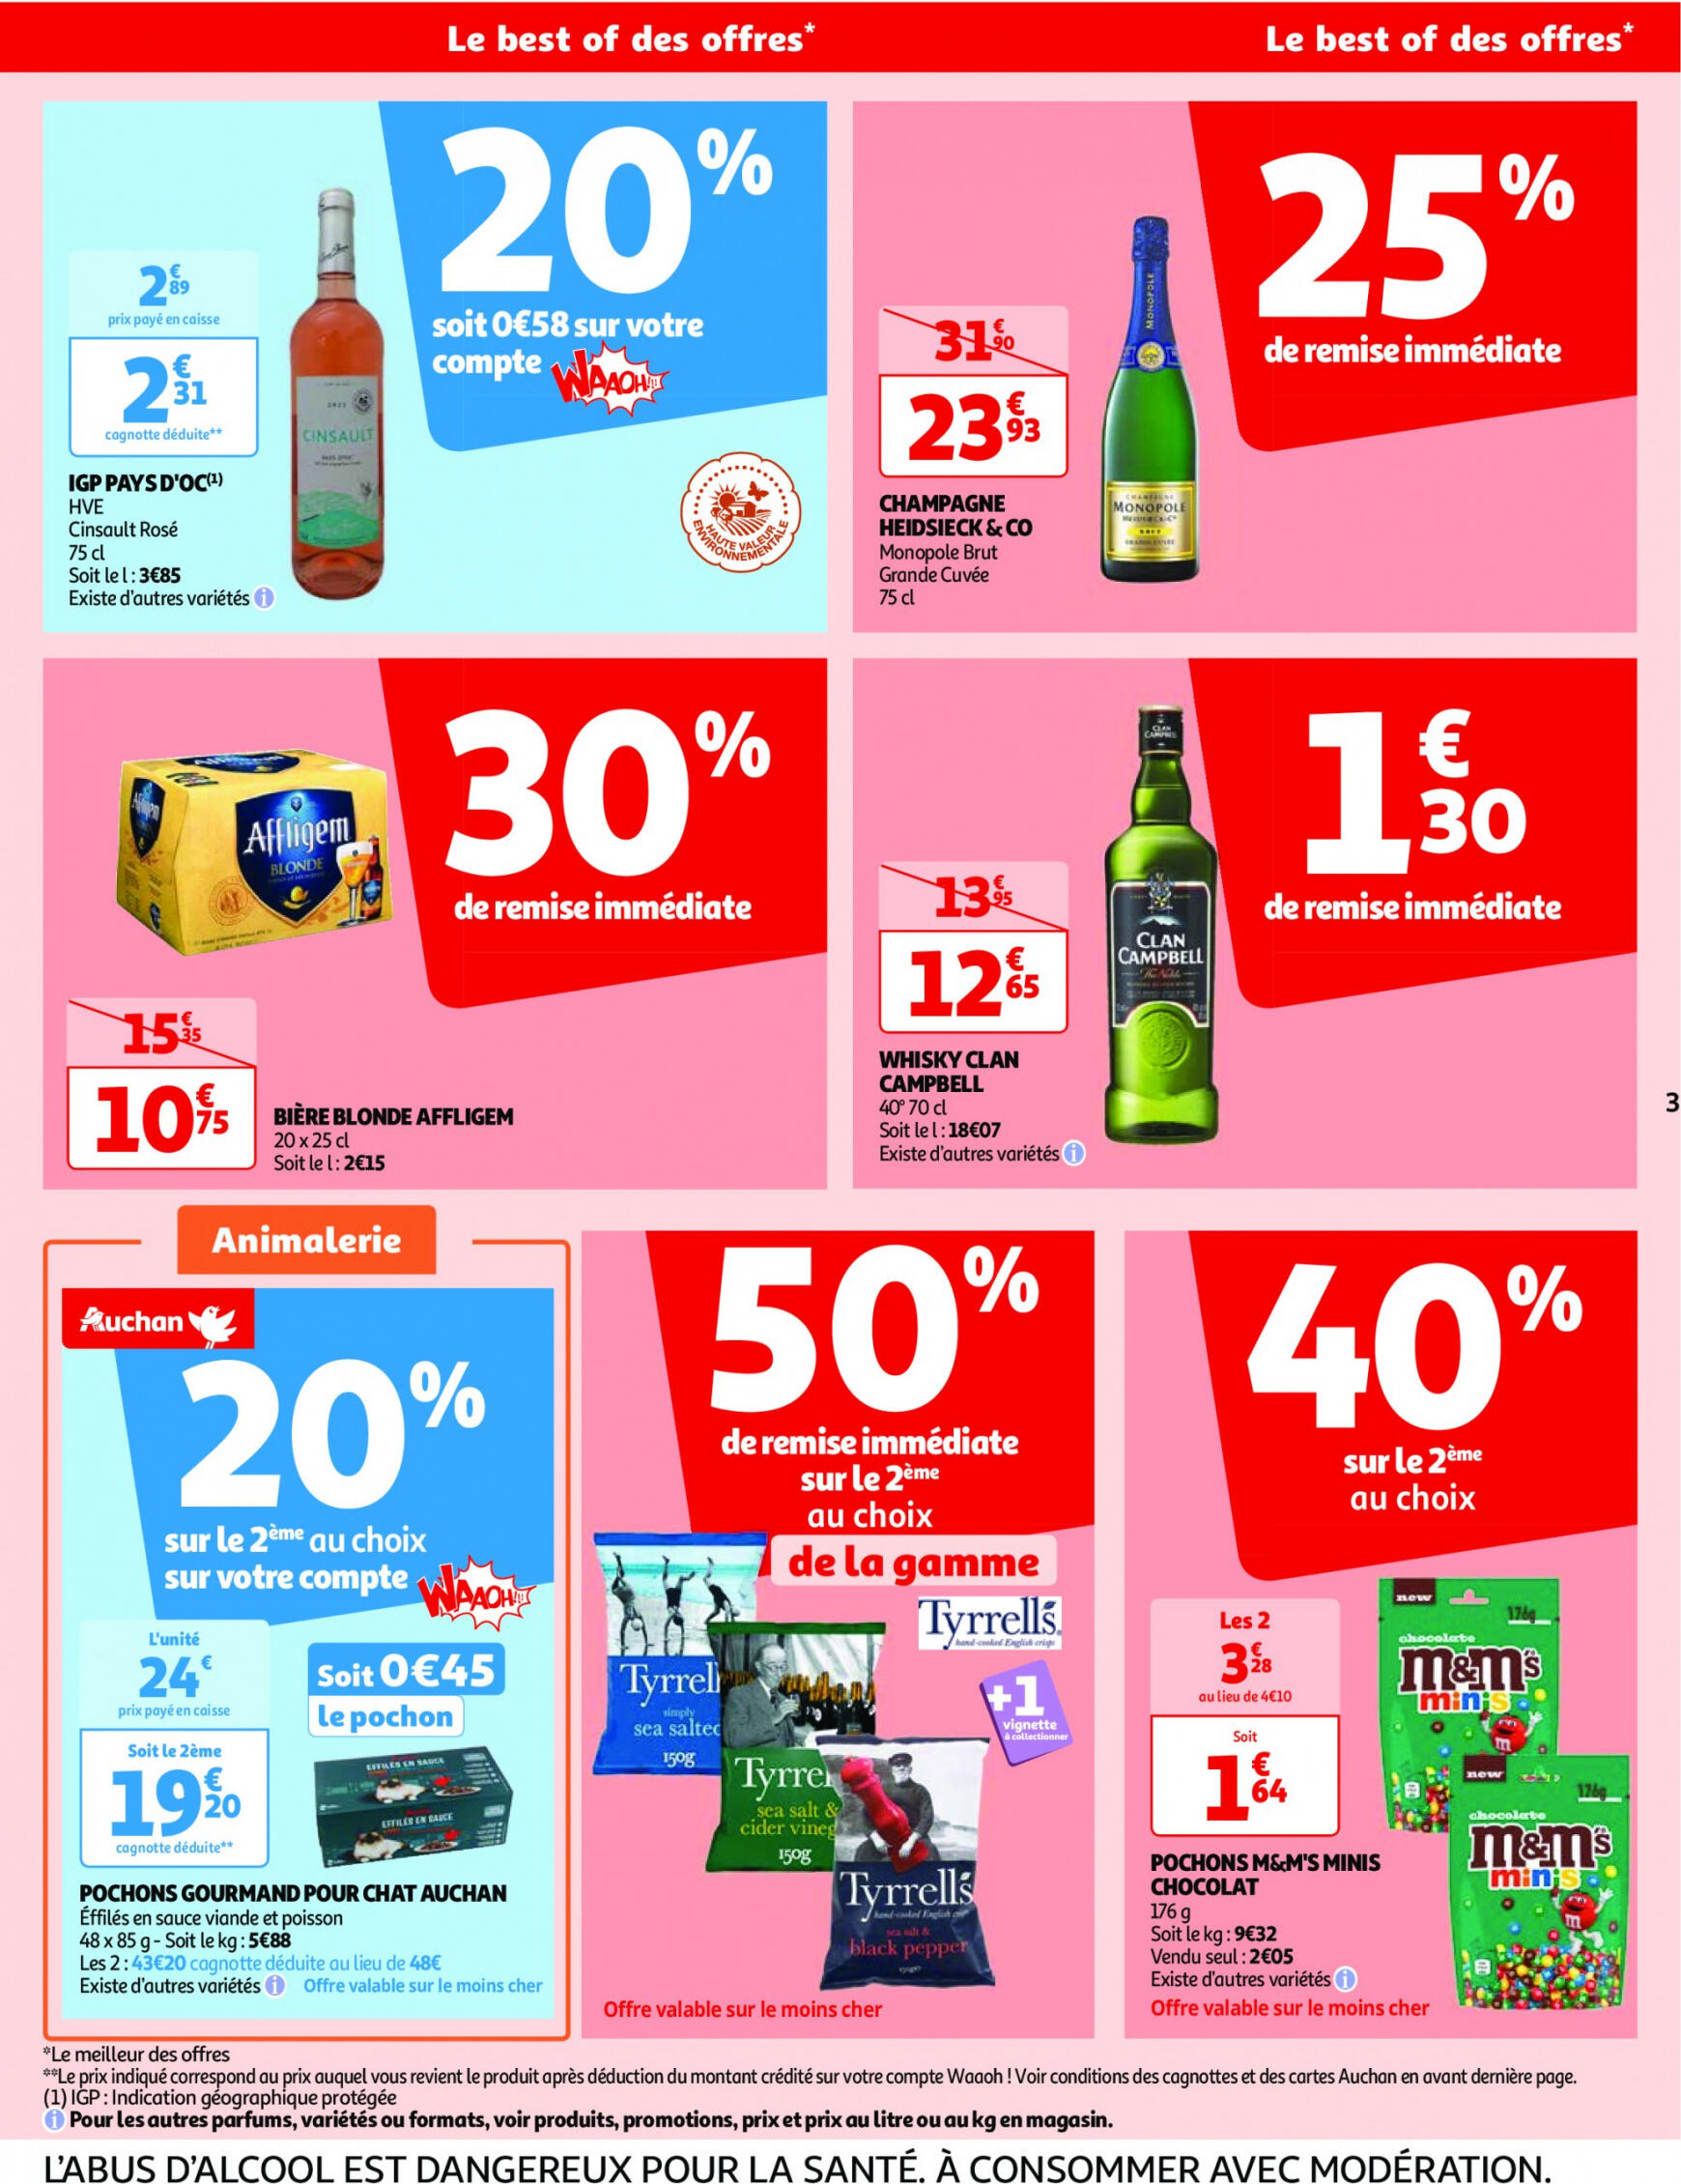 auchan - Auchan - Nos surgelés ont tout bon folder huidig 14.05. - 21.05. - page: 3